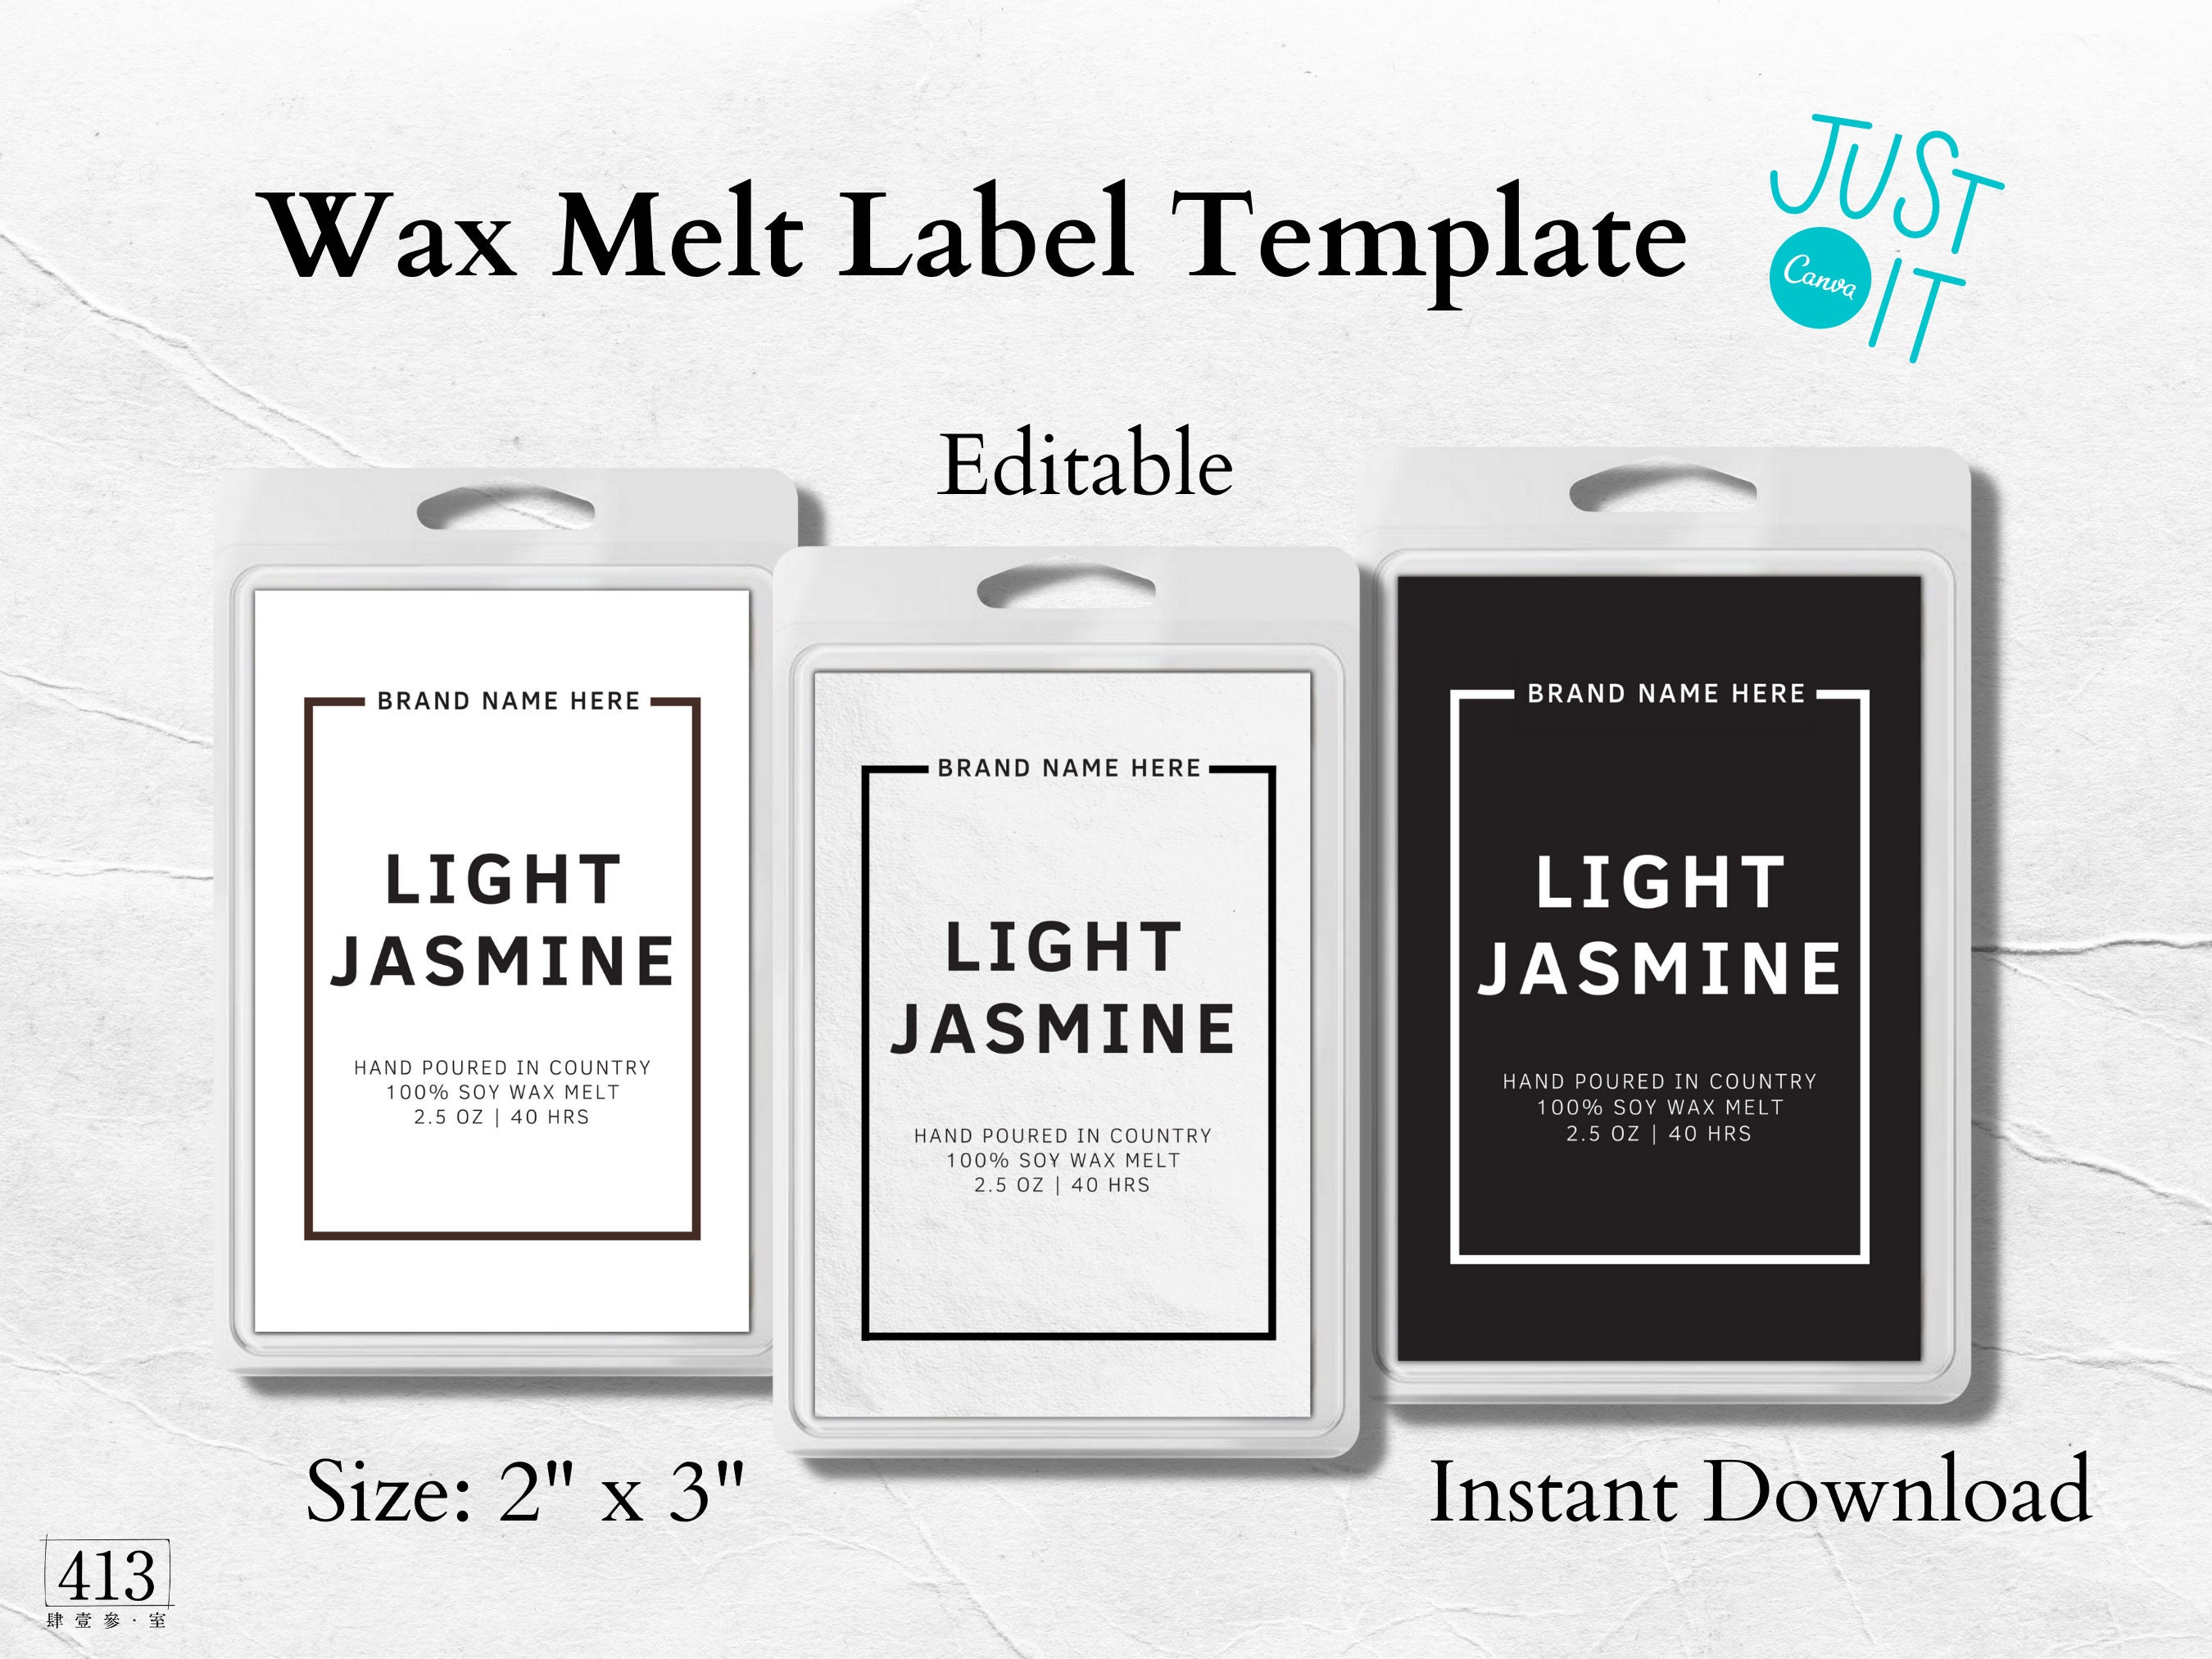 Wax Melt Label Template 2x3 Size Wax Melt Packaging Templett ADELE 